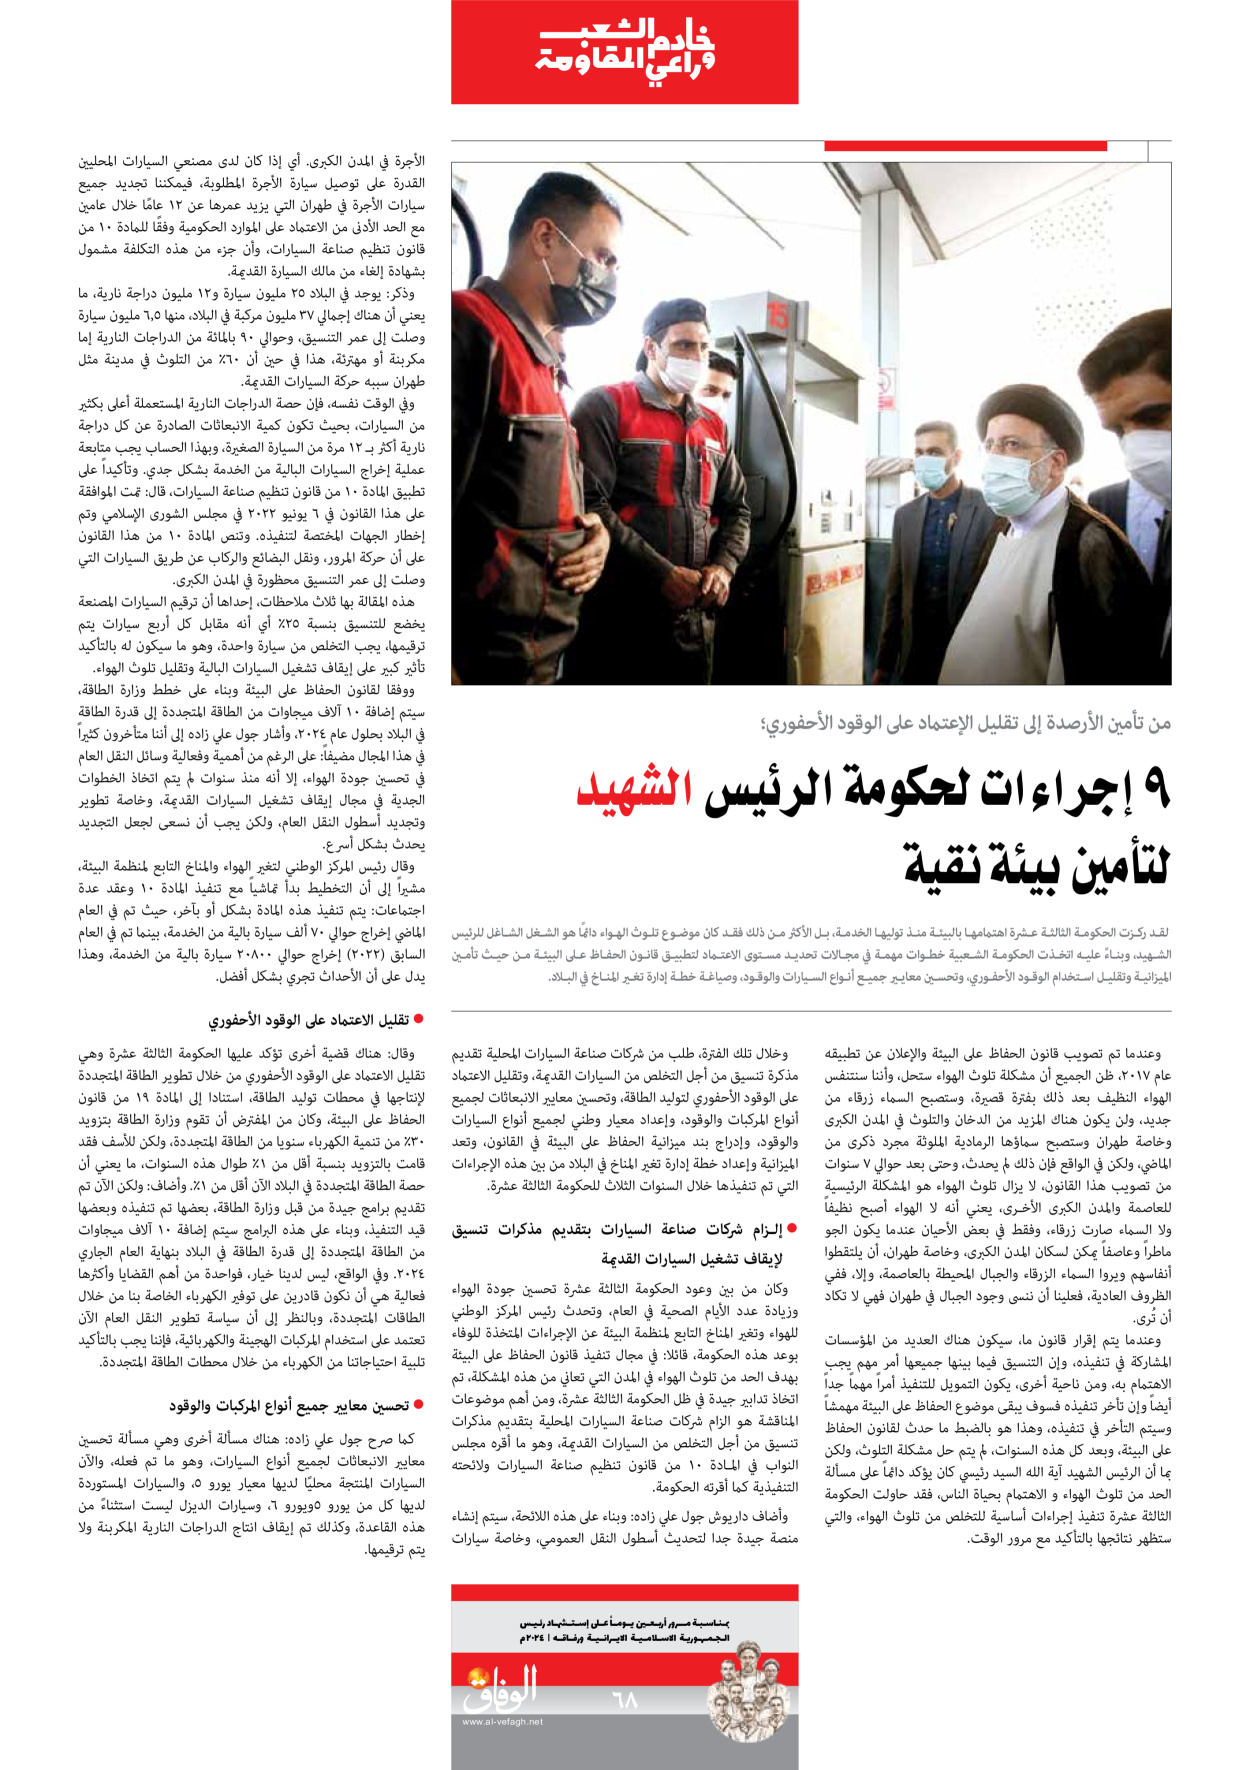 صحیفة ایران الدولیة الوفاق - ملحق ویژه نامه چهلم شهید رییسی - ٢٩ يونيو ٢٠٢٤ - الصفحة ٦۸